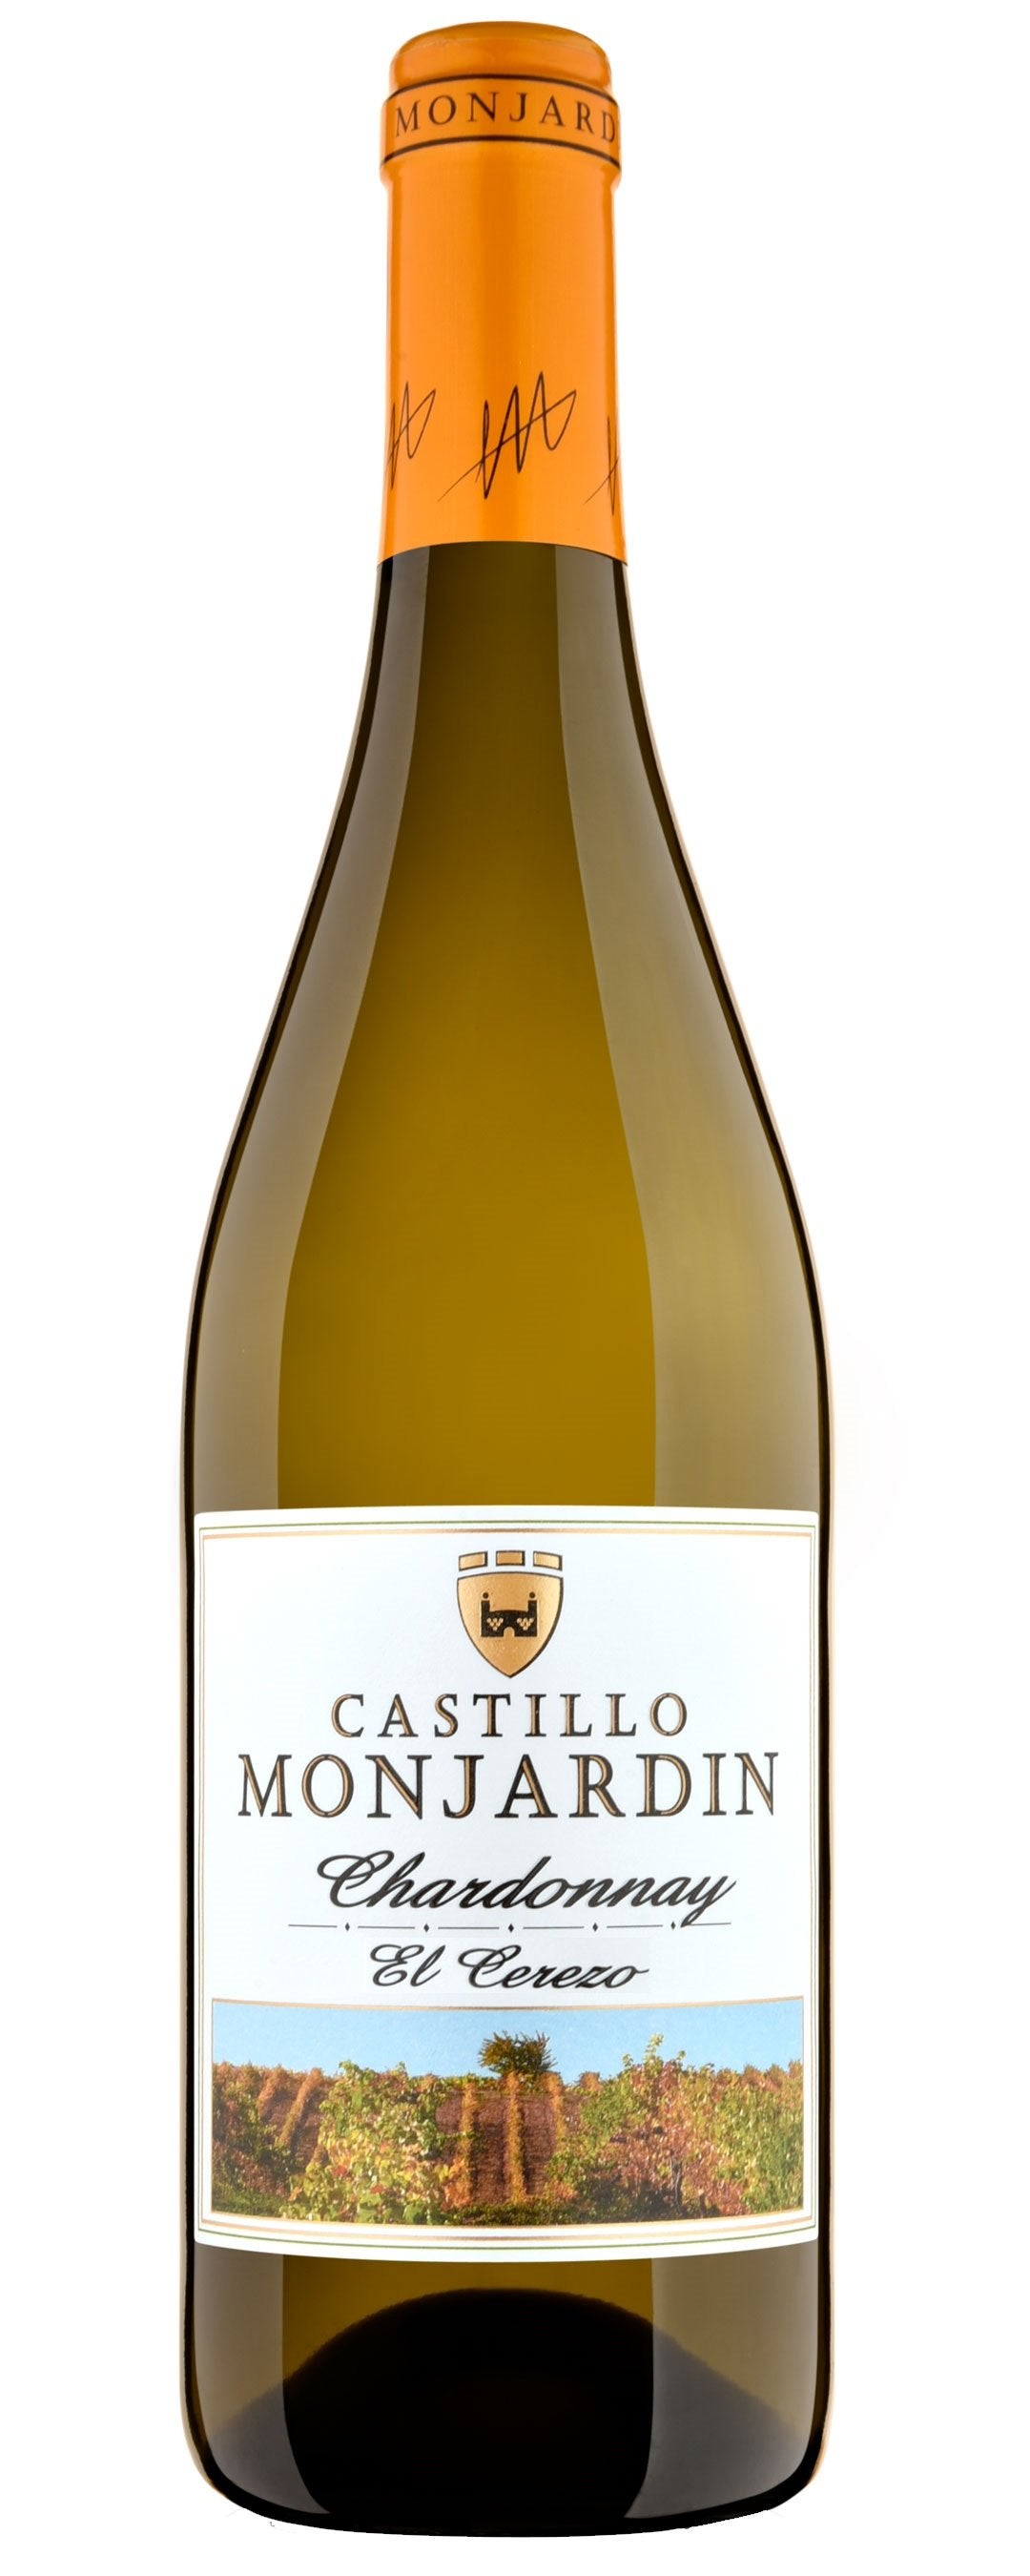 Castillo Monjardin Chardonnay El Cerezo 2018